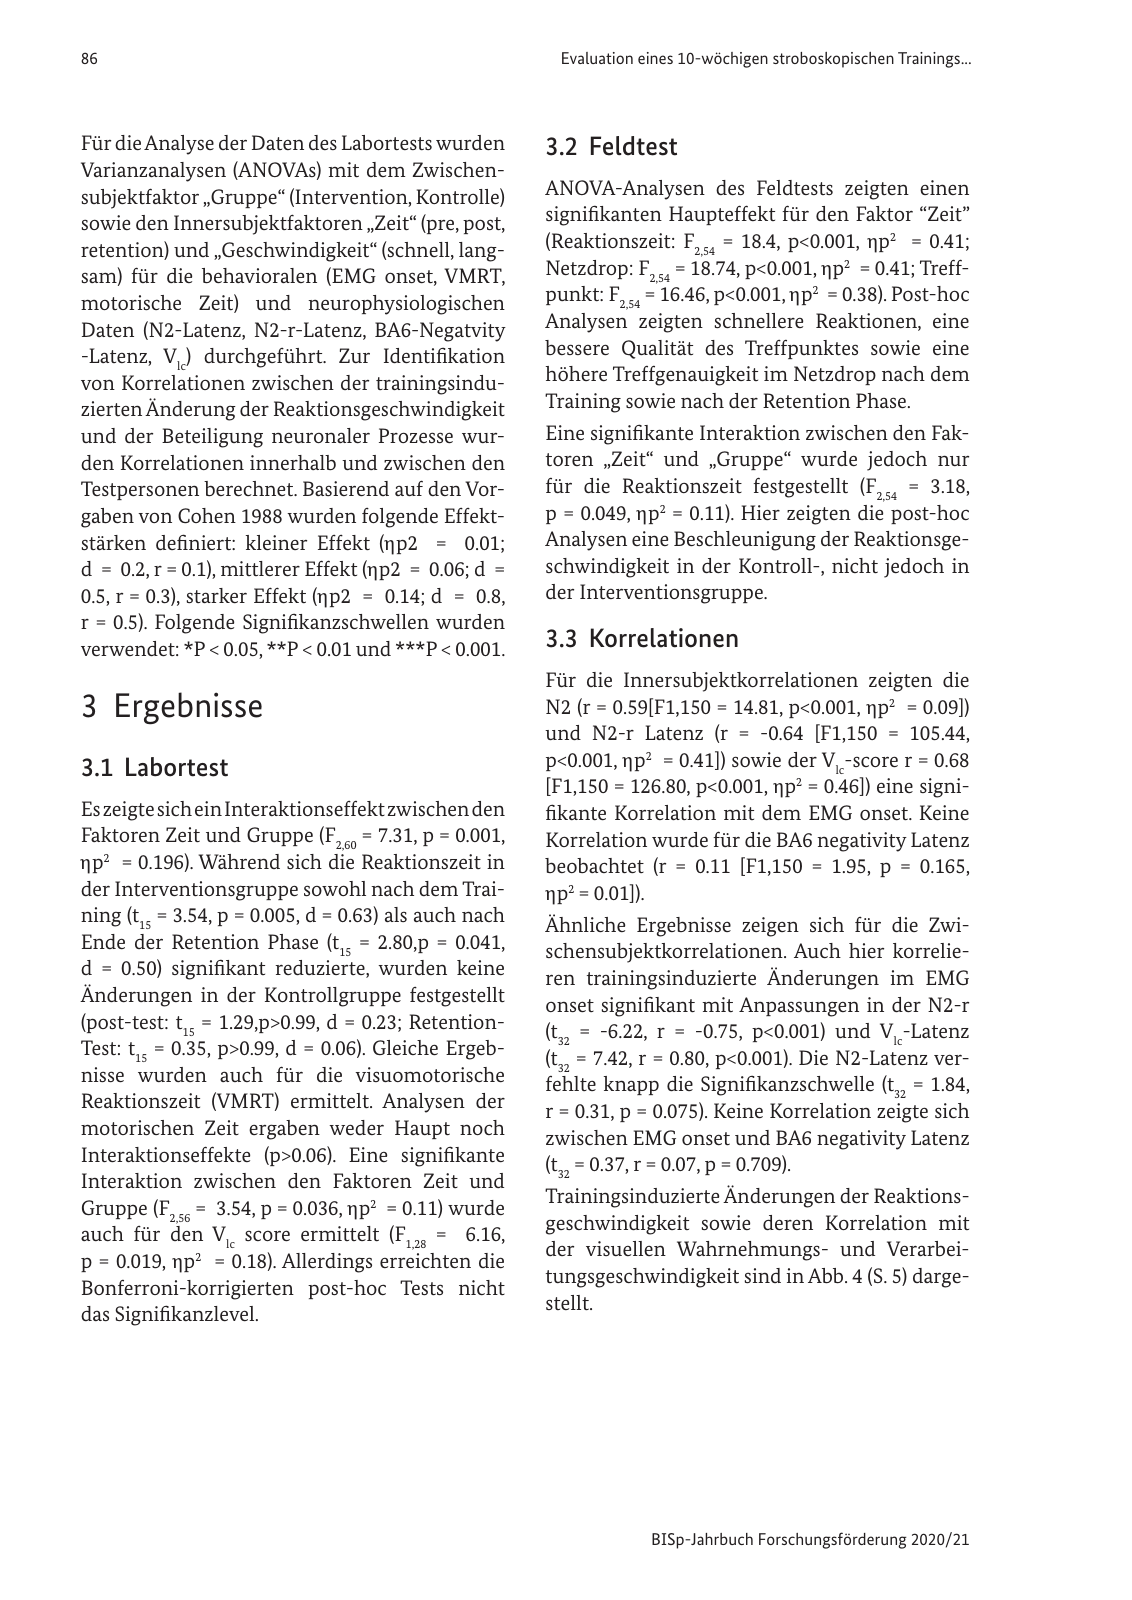 Vorschau BISp-Jahrbuch 2020/21 Seite 88